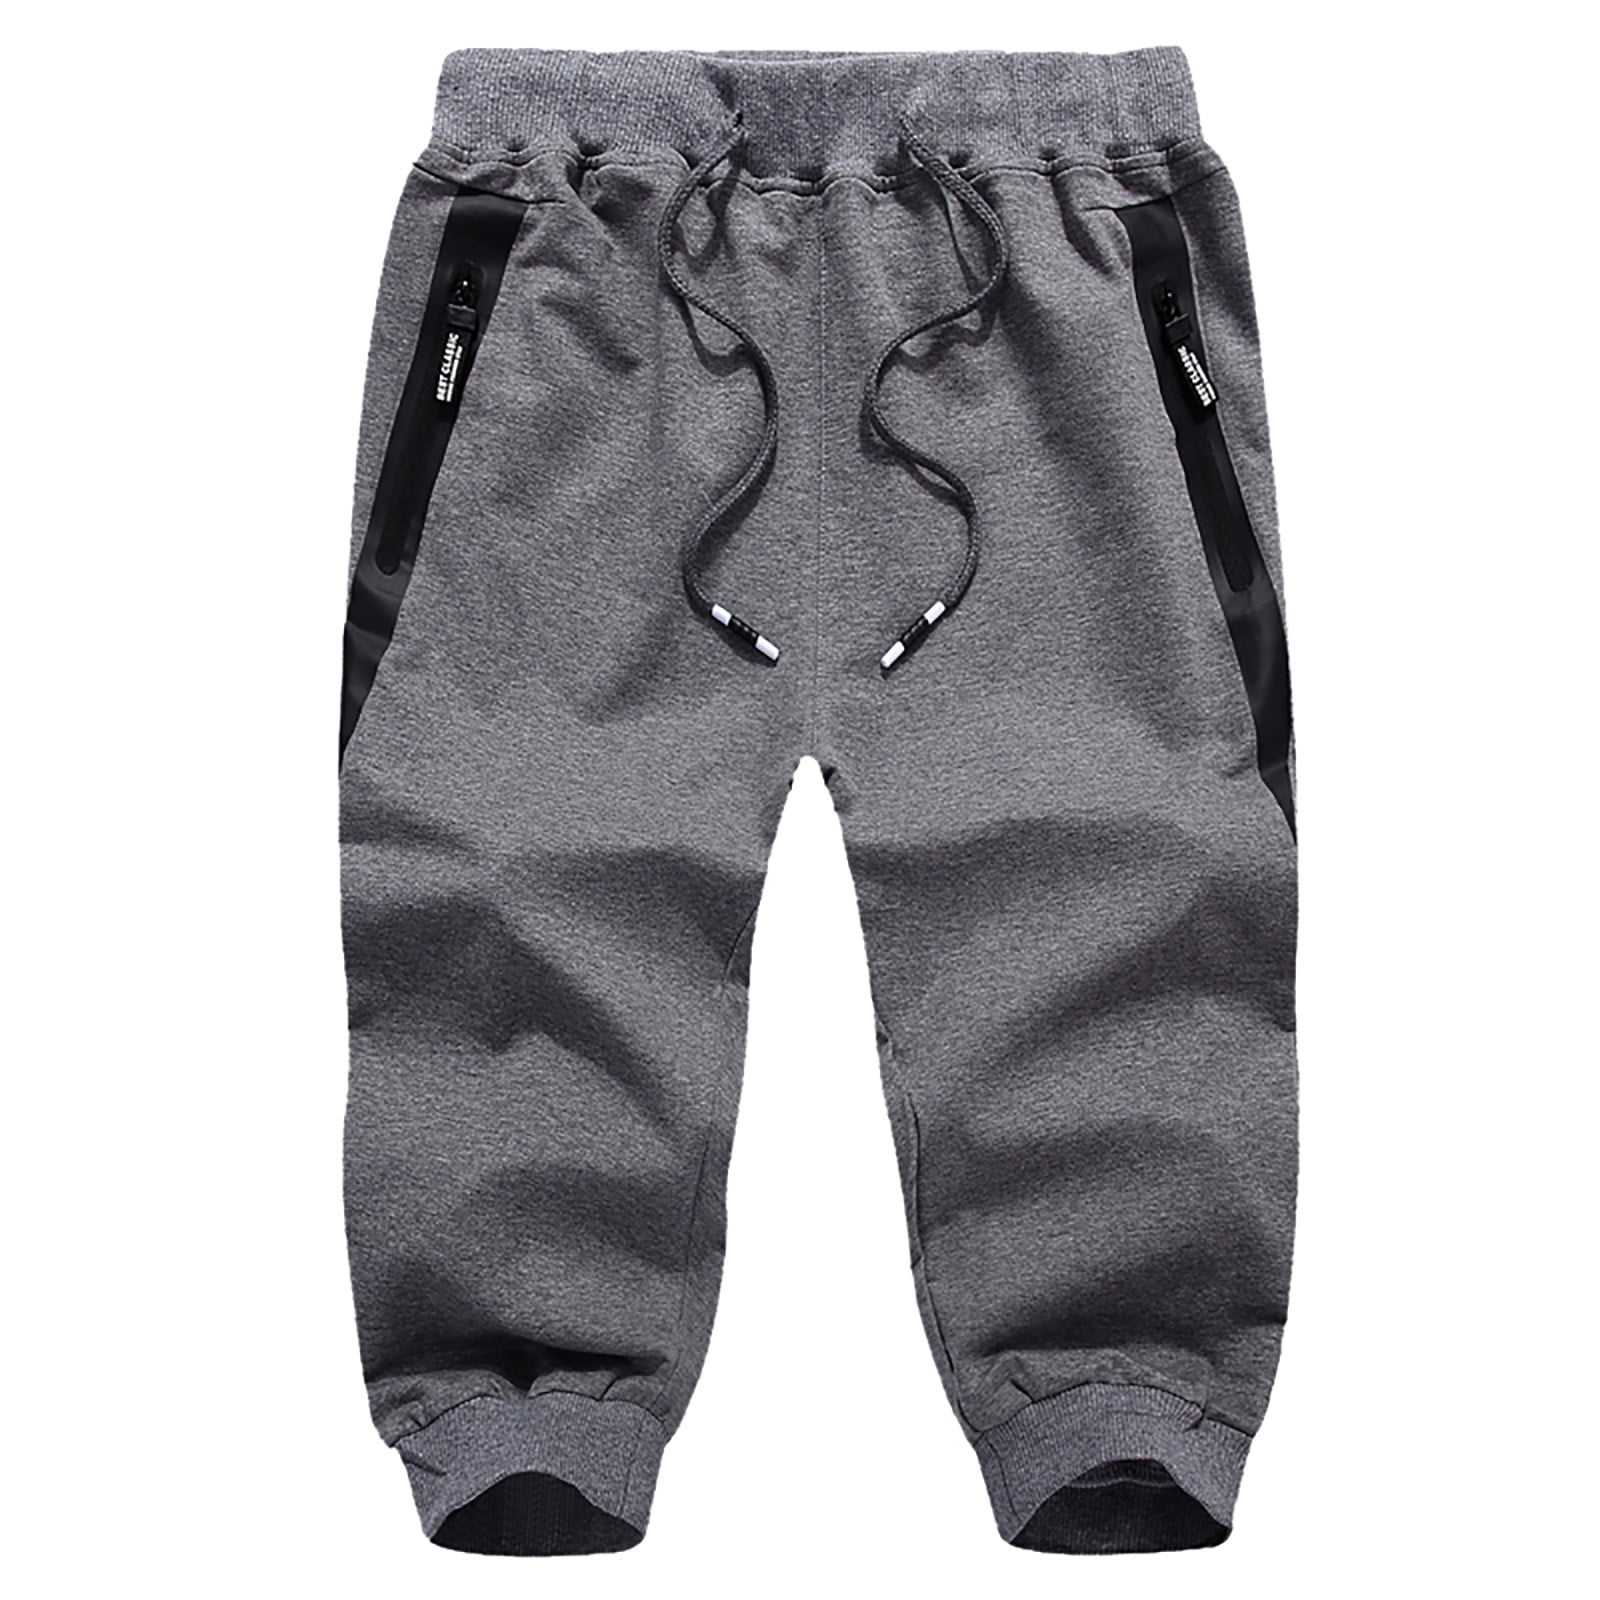 eczipvz Cargo Pants for Men Men's Fashion Suit pant Casual Zipper ...